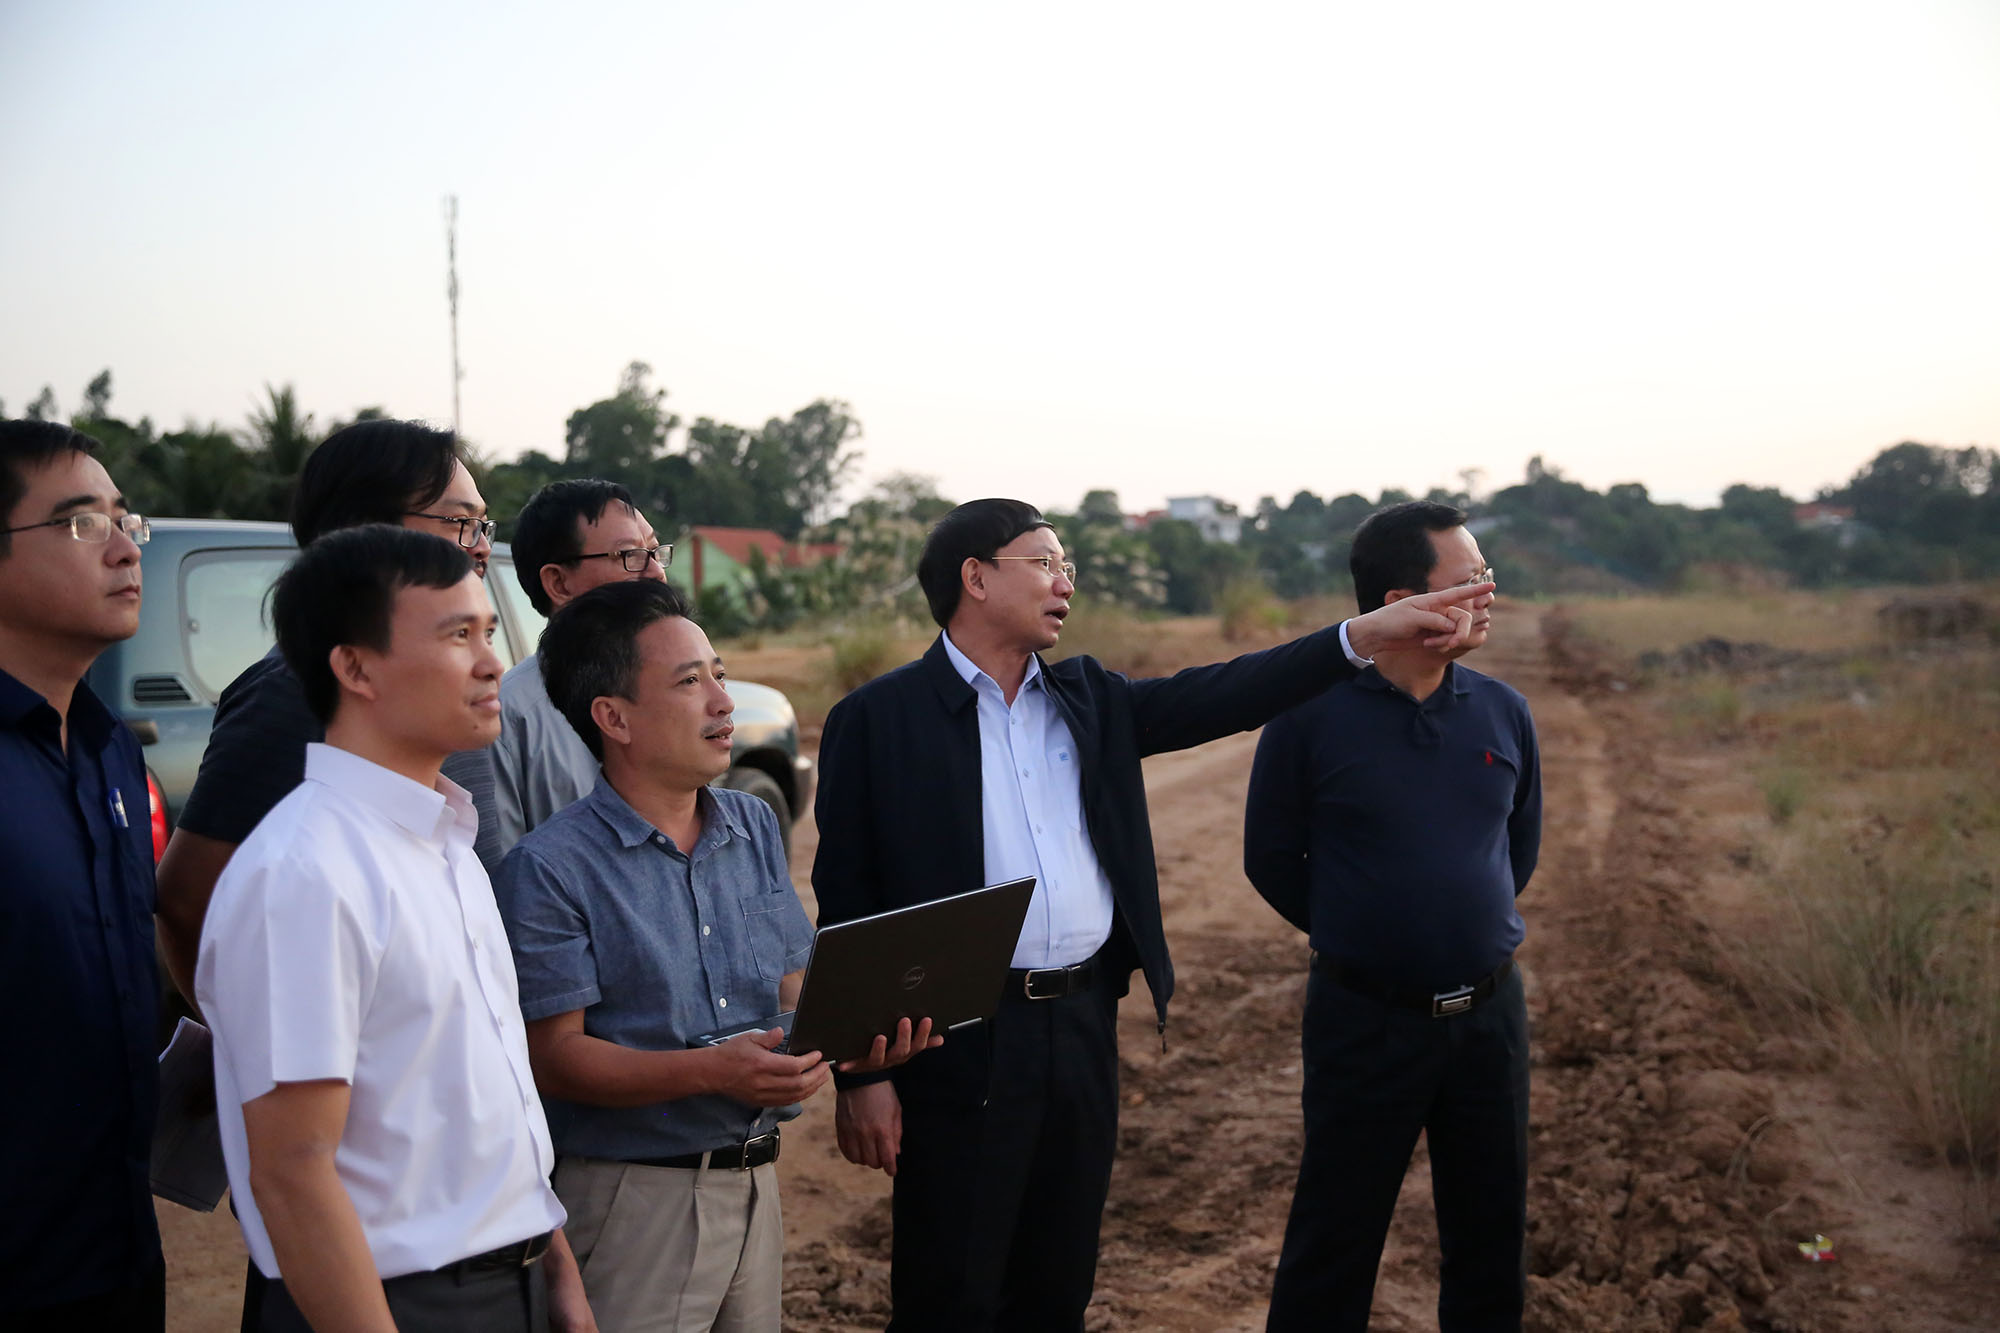 Đồng chí Bí thư Tỉnh ủy, yêu cầu giữ nguyên dịện tích rừng phòng hộ, rừng đặc dụng khu vực đồi ven tuyến đường 10 làn xe, từ nút giao Minh Khai tới ngã 3 đường Hoàng Quốc Việt.